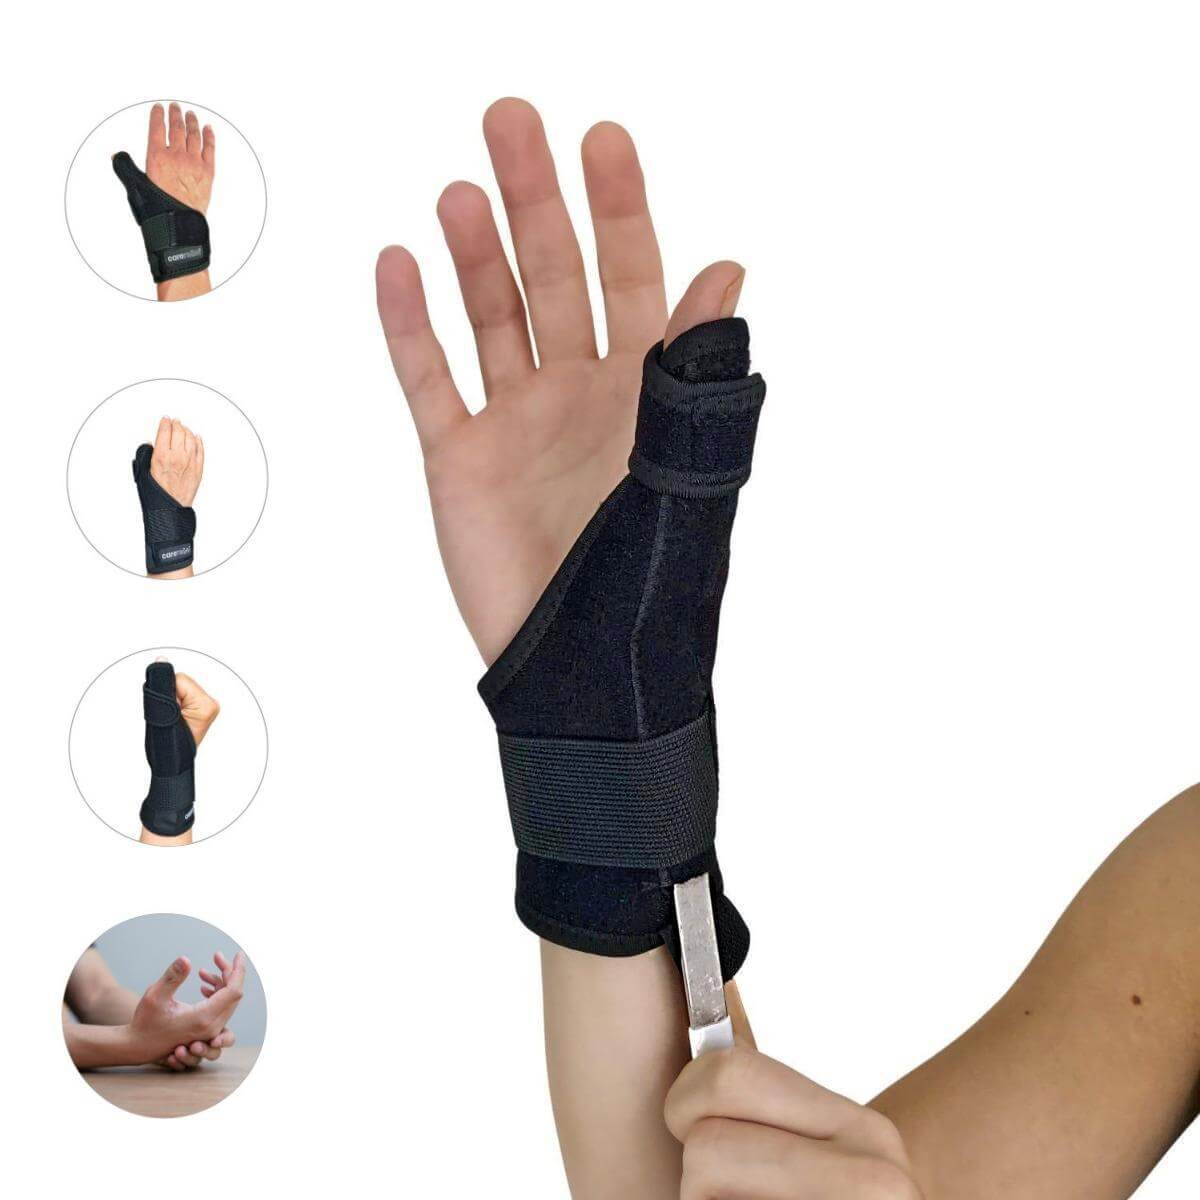 Køb tommelfinger skinne og håndledsstøtte i anatomisk justerbart design. Bedste støtte til tommel, hånd og håndled. Køb Støttebind HL10 mod smerter fra forstuvning, karpal tunnel syndrom, seneskedehindebetændelse og slidgigt.